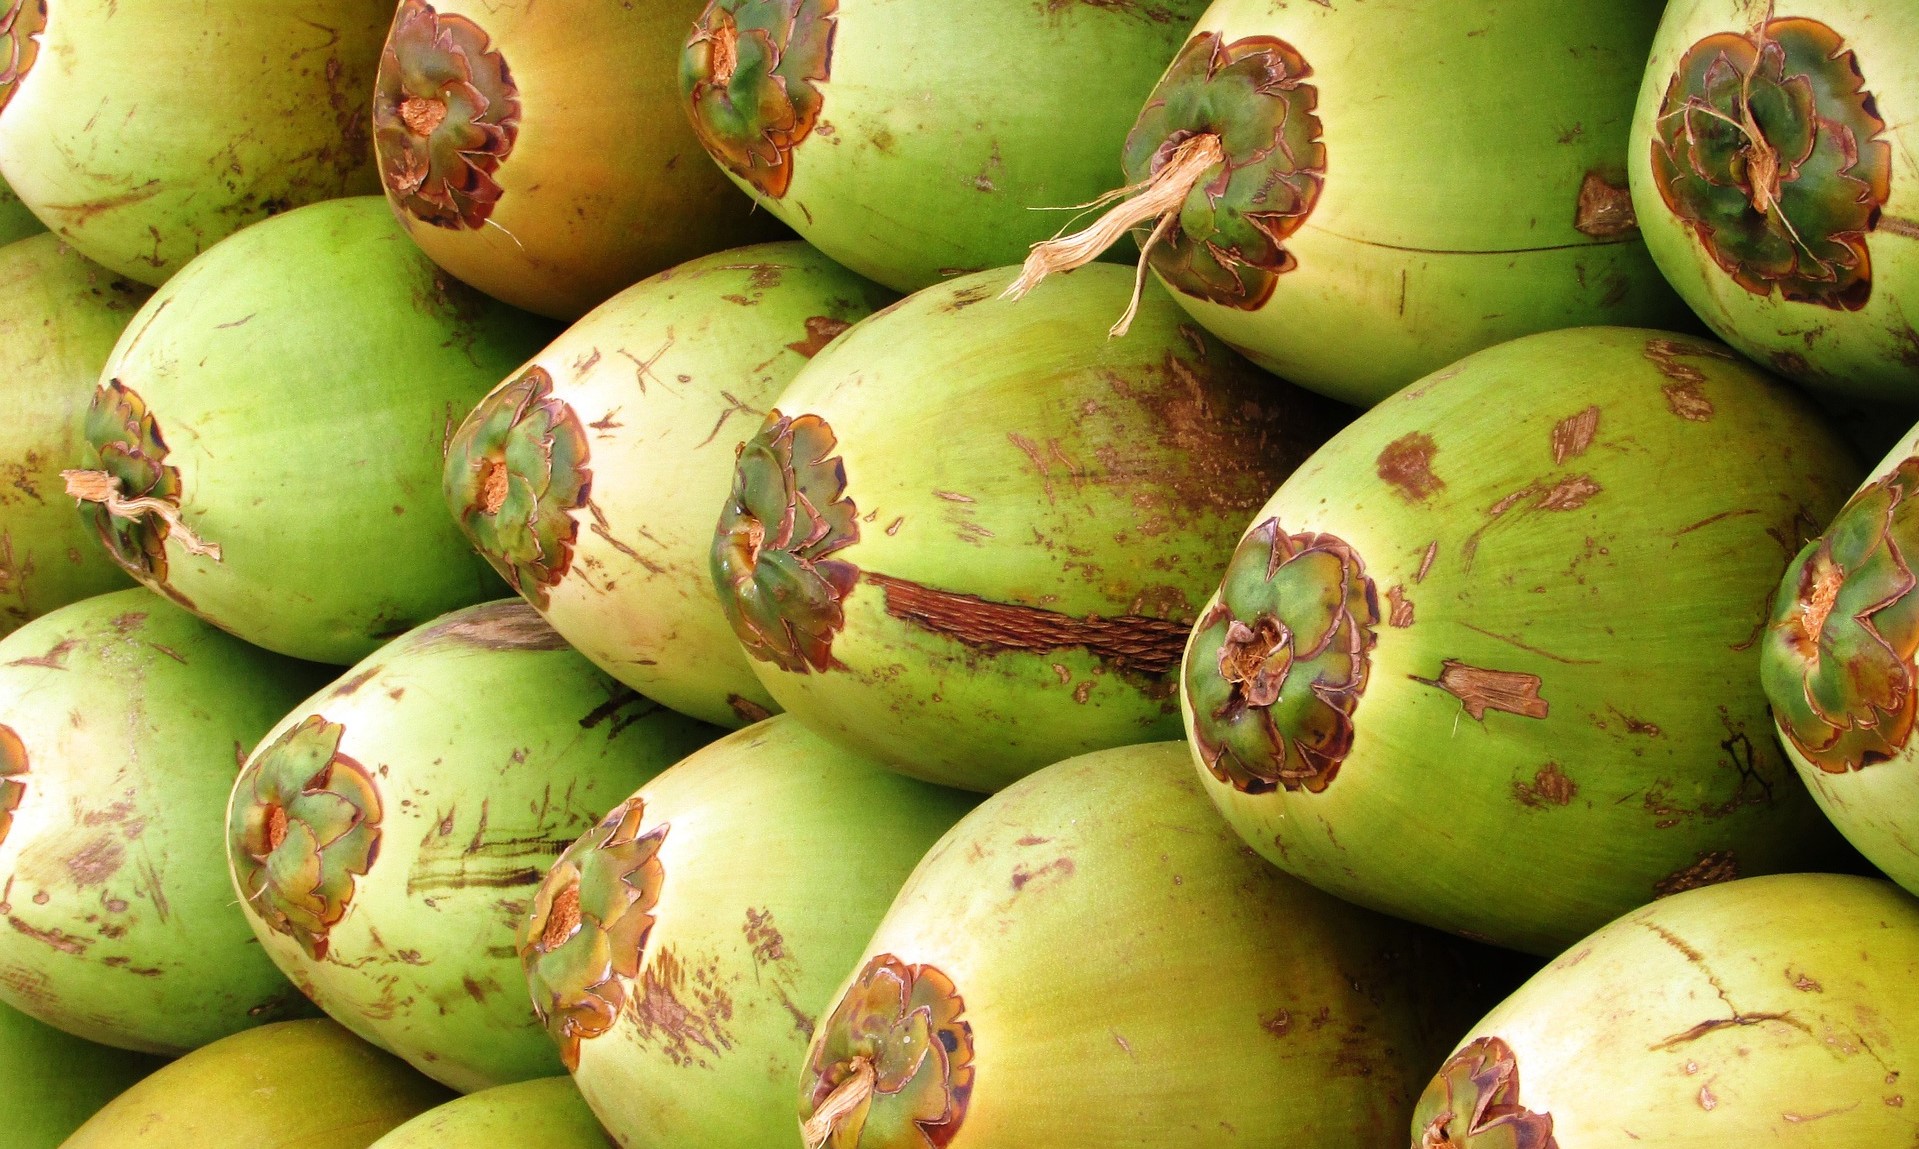 kokosnötter